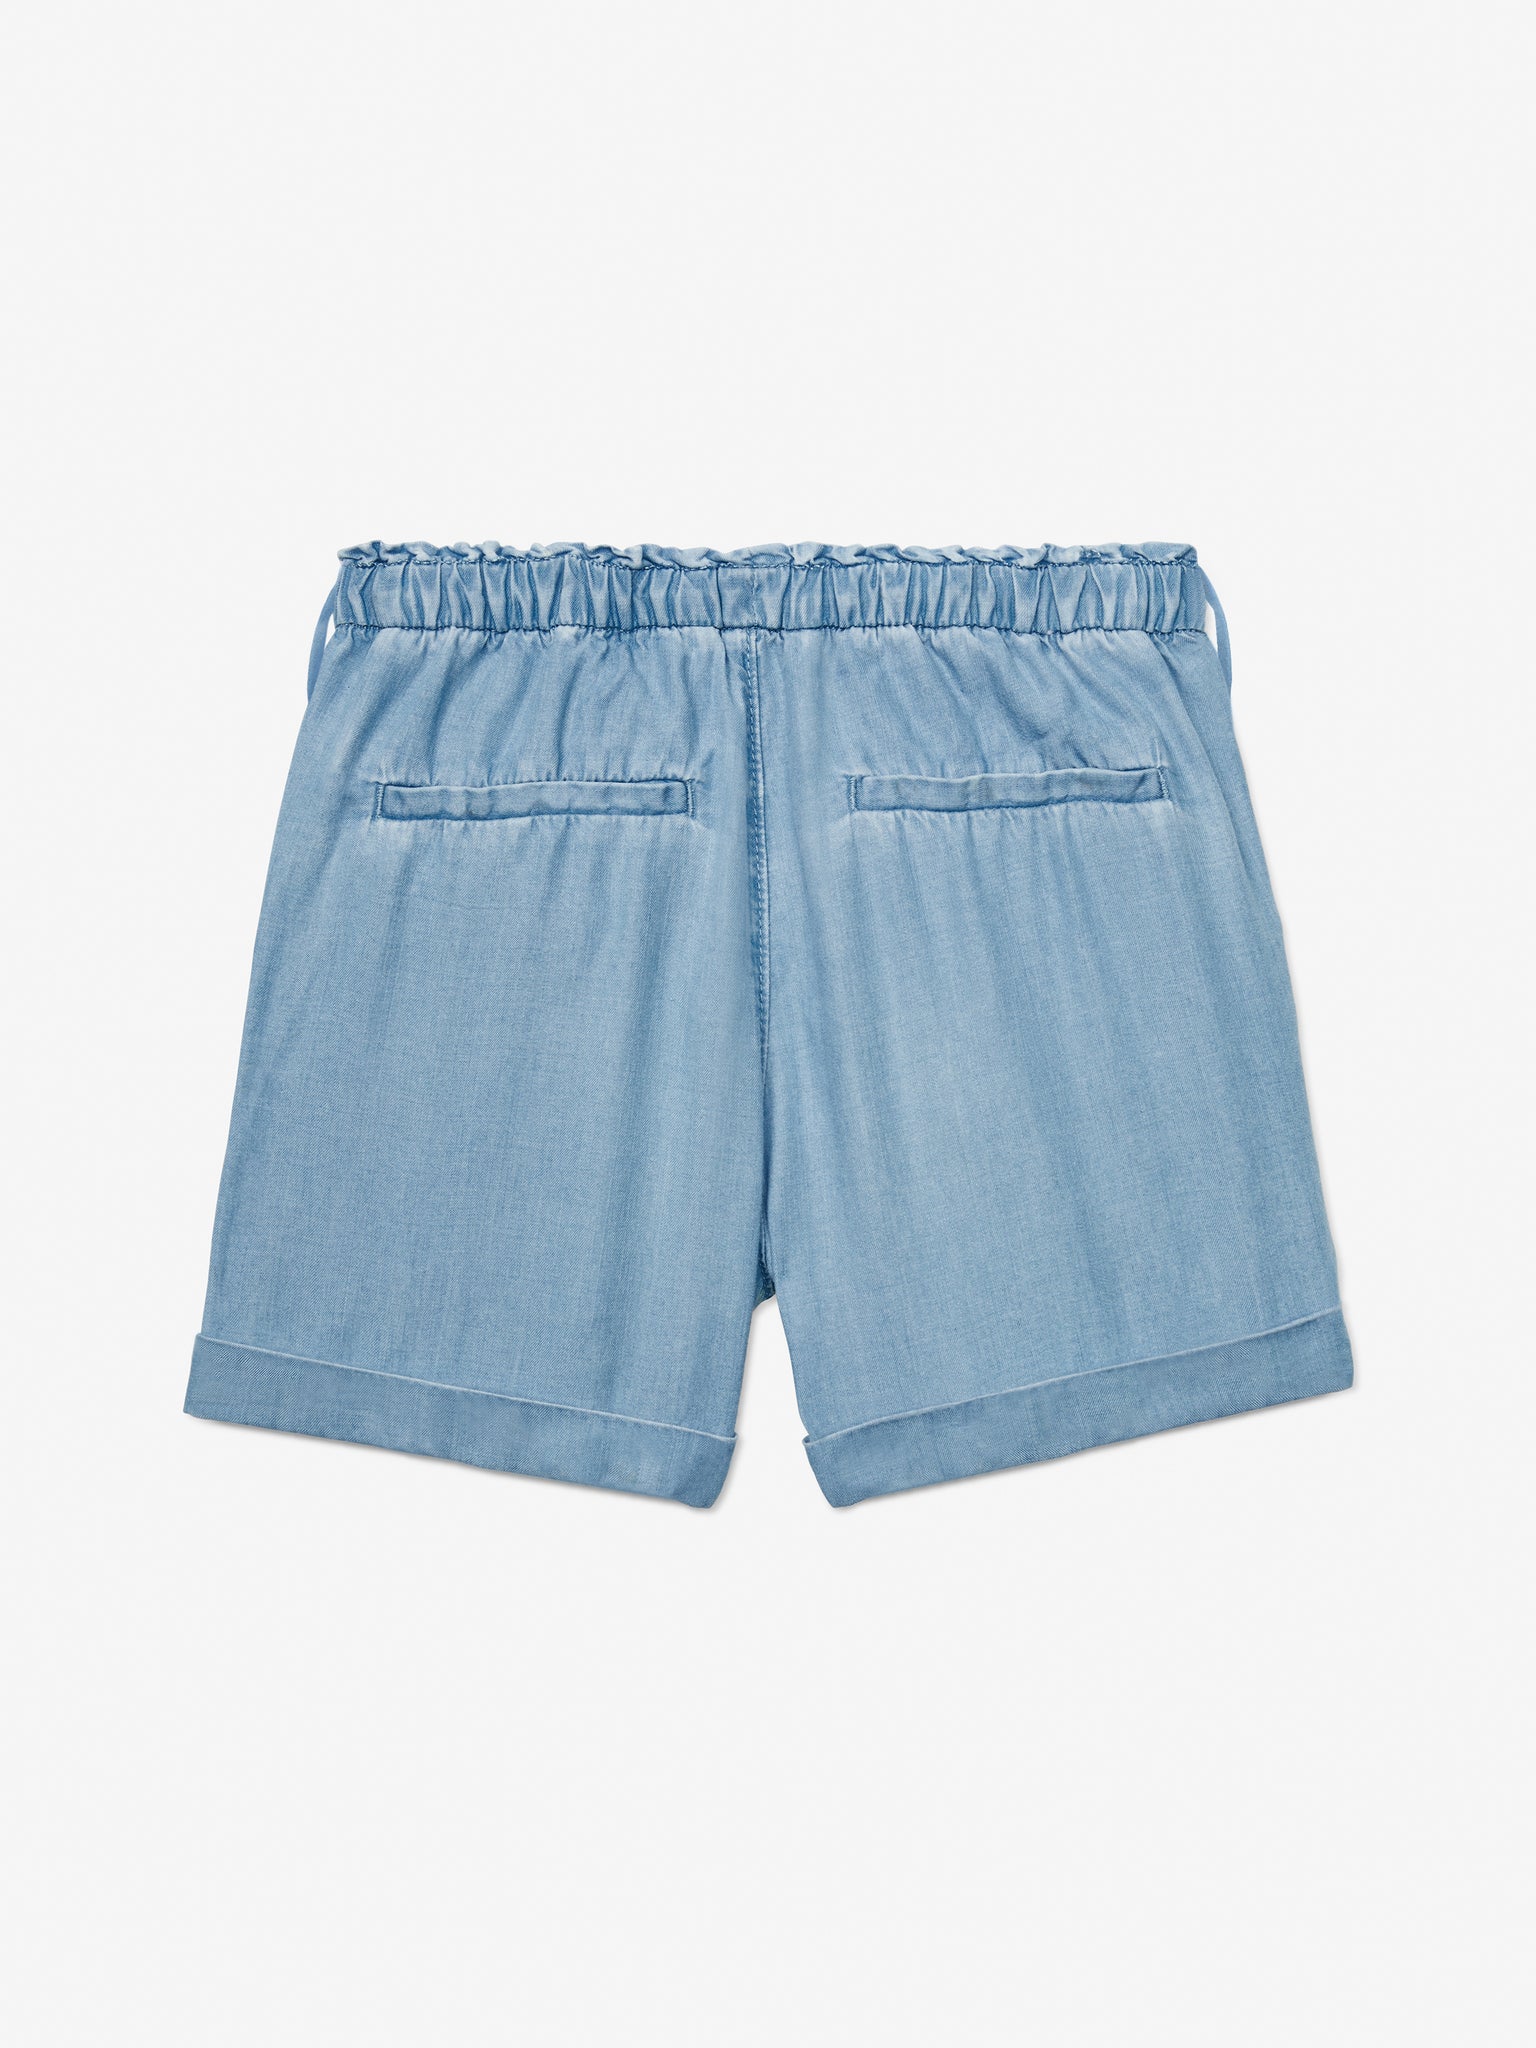 Hazelnut Shorts (Girls) - Chambray